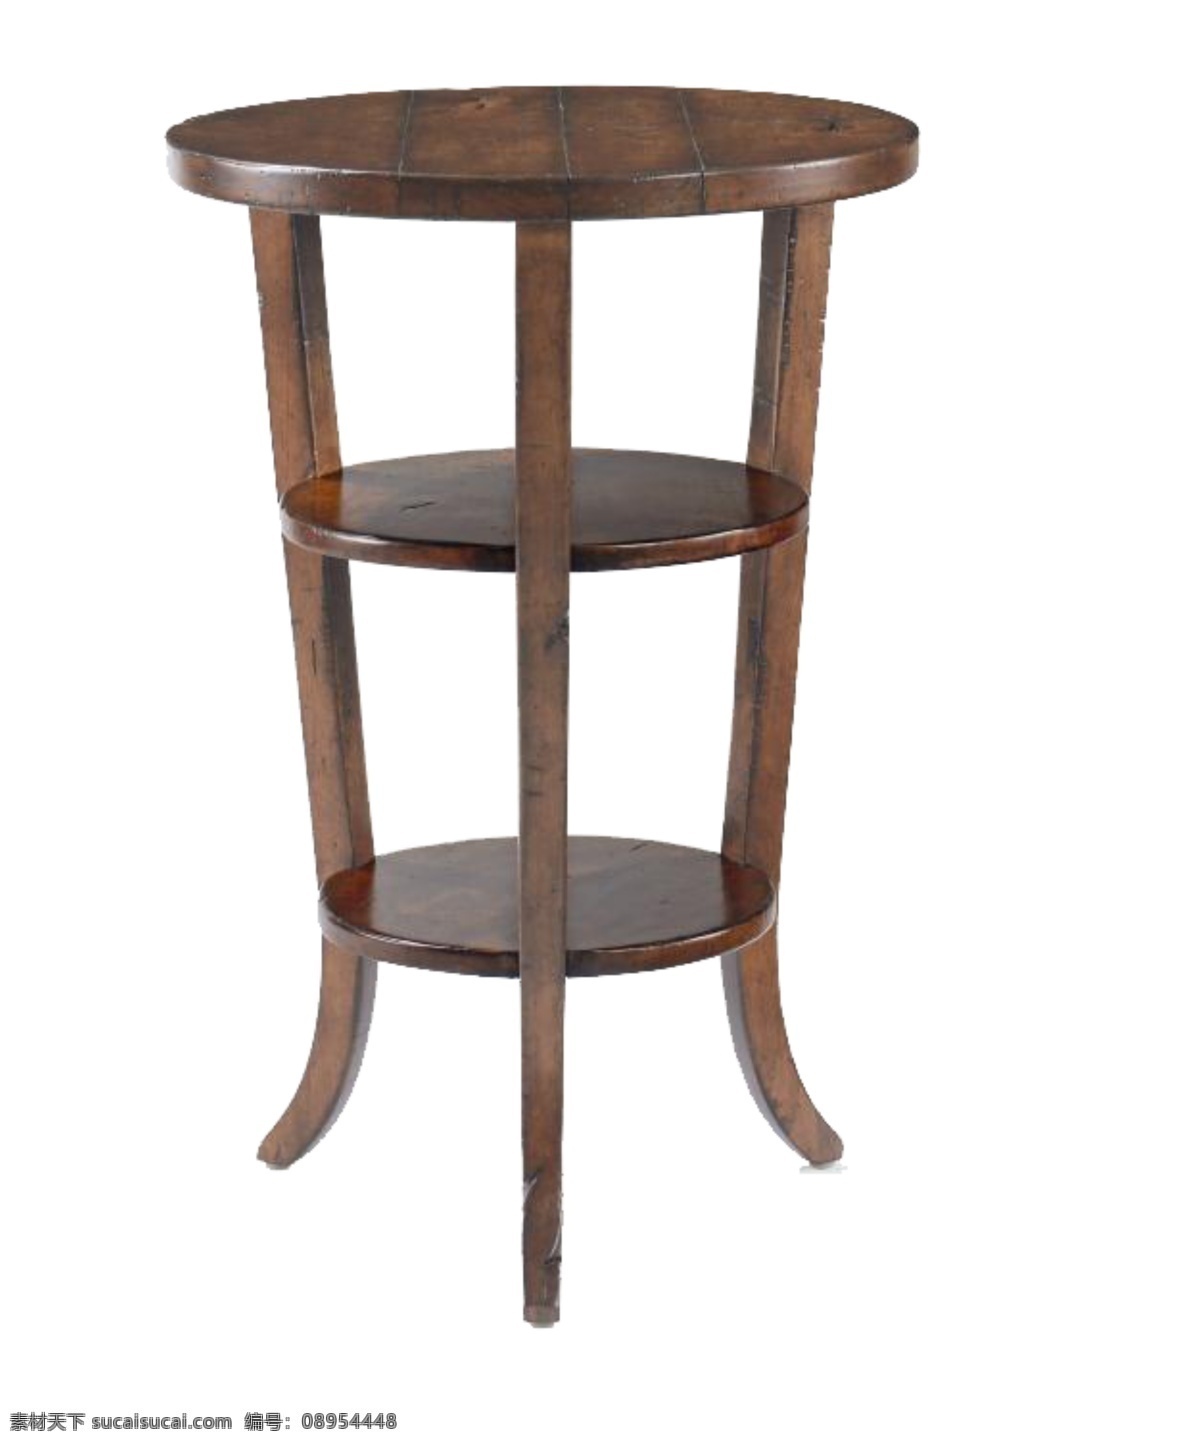 复古 木质 三 层 圆形 桌子 茶几 家具 欧美 欧美风格 设计素材 设计元素 铁艺